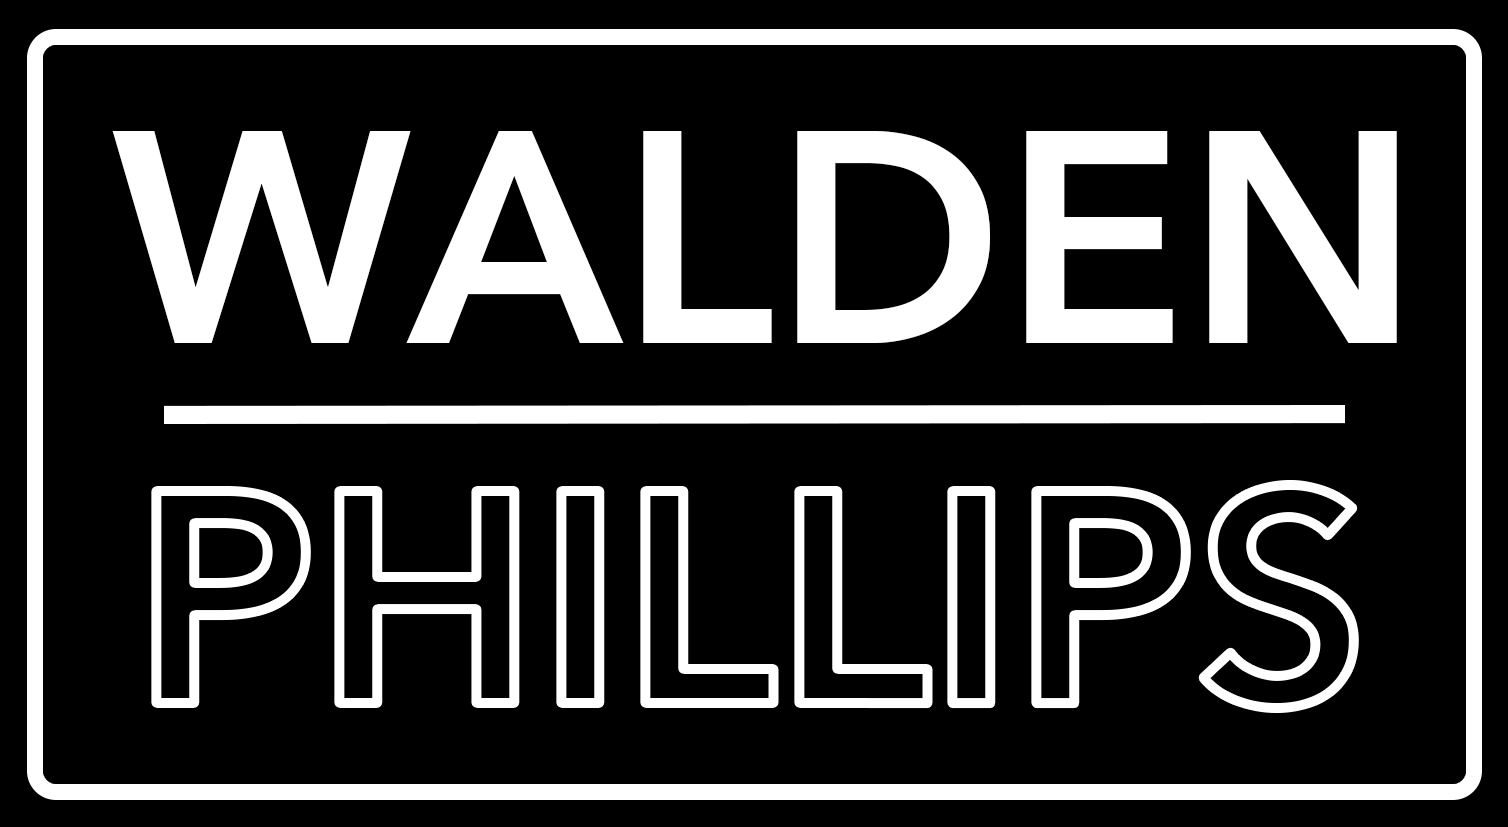 Walden Phillips Ltd